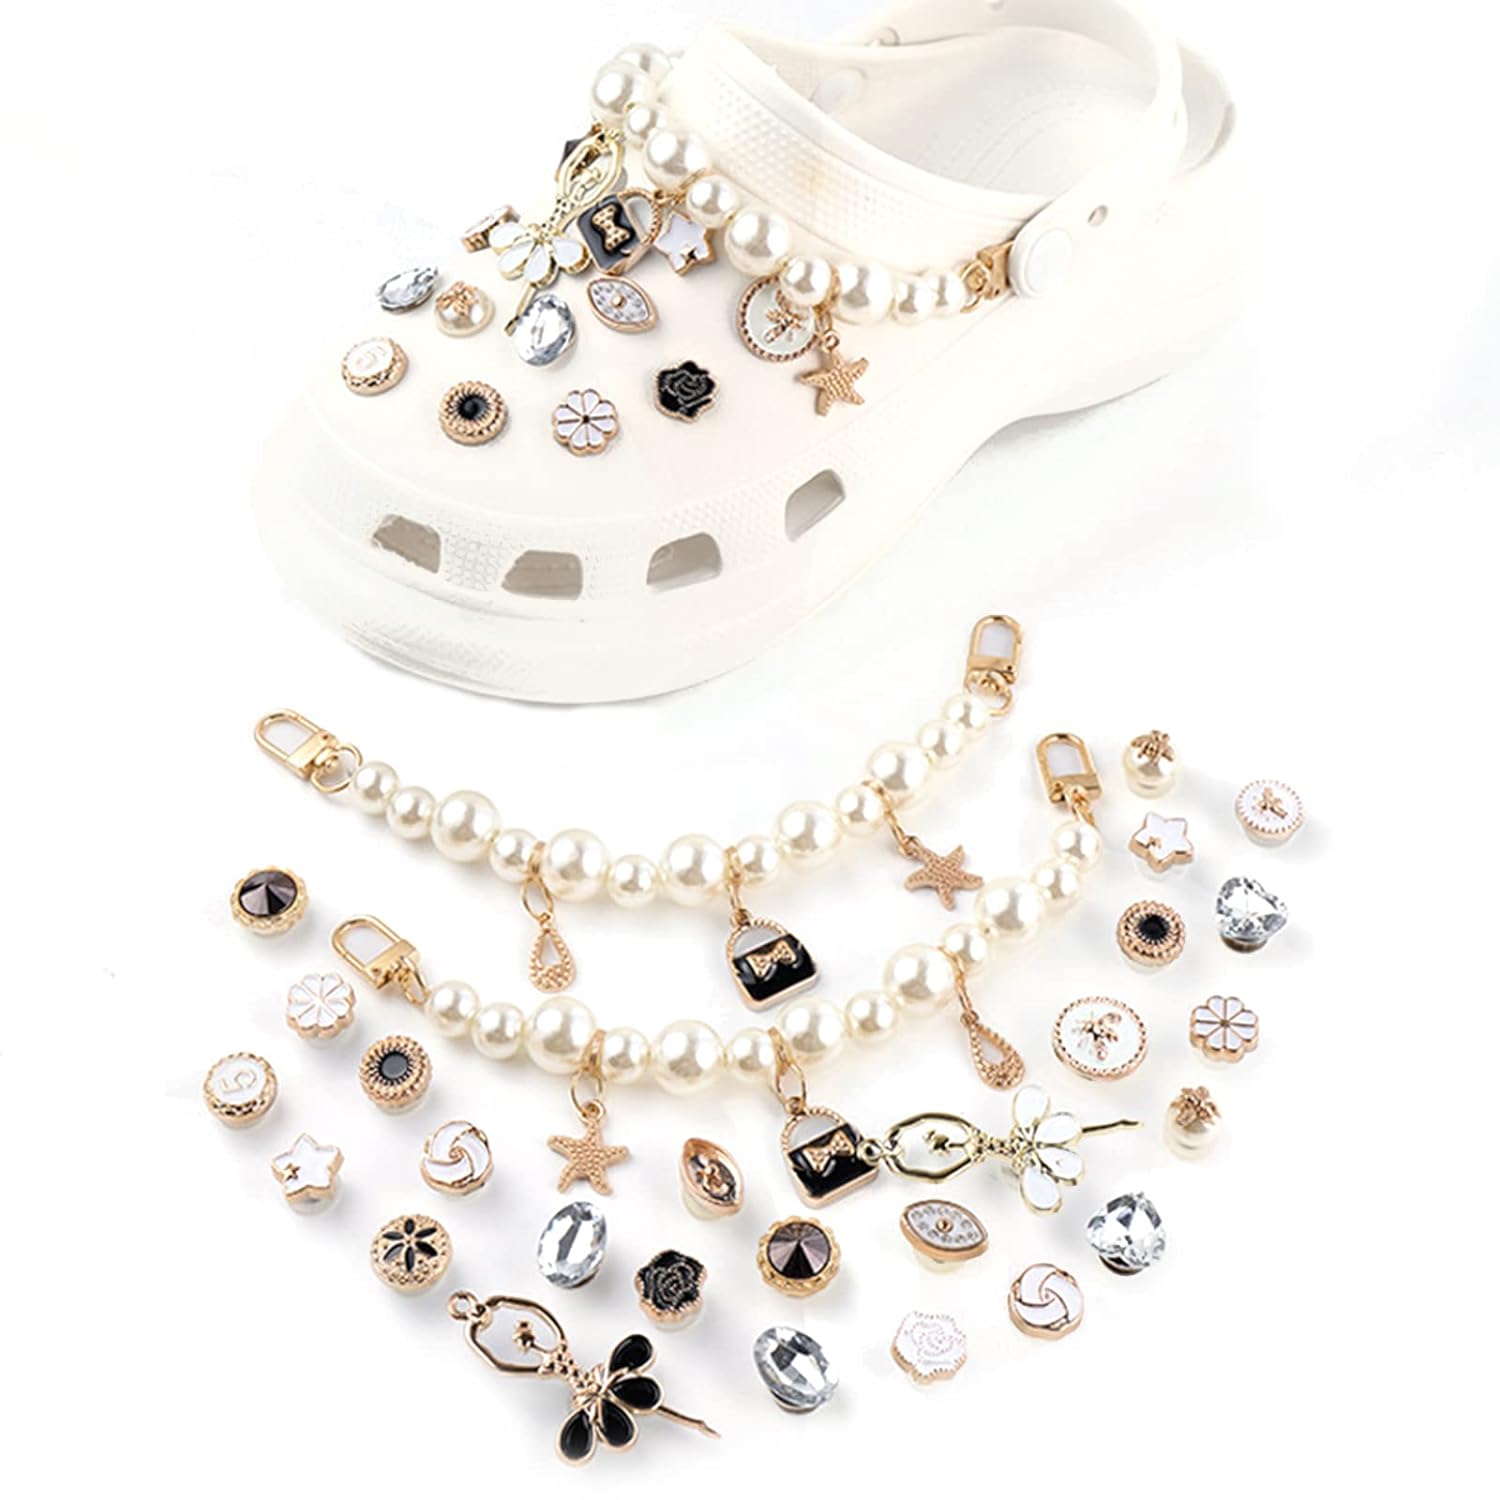 مصمم علامة pearl jewels وتشكيلة كبيرة ومتنوعة من العلامات التجارية